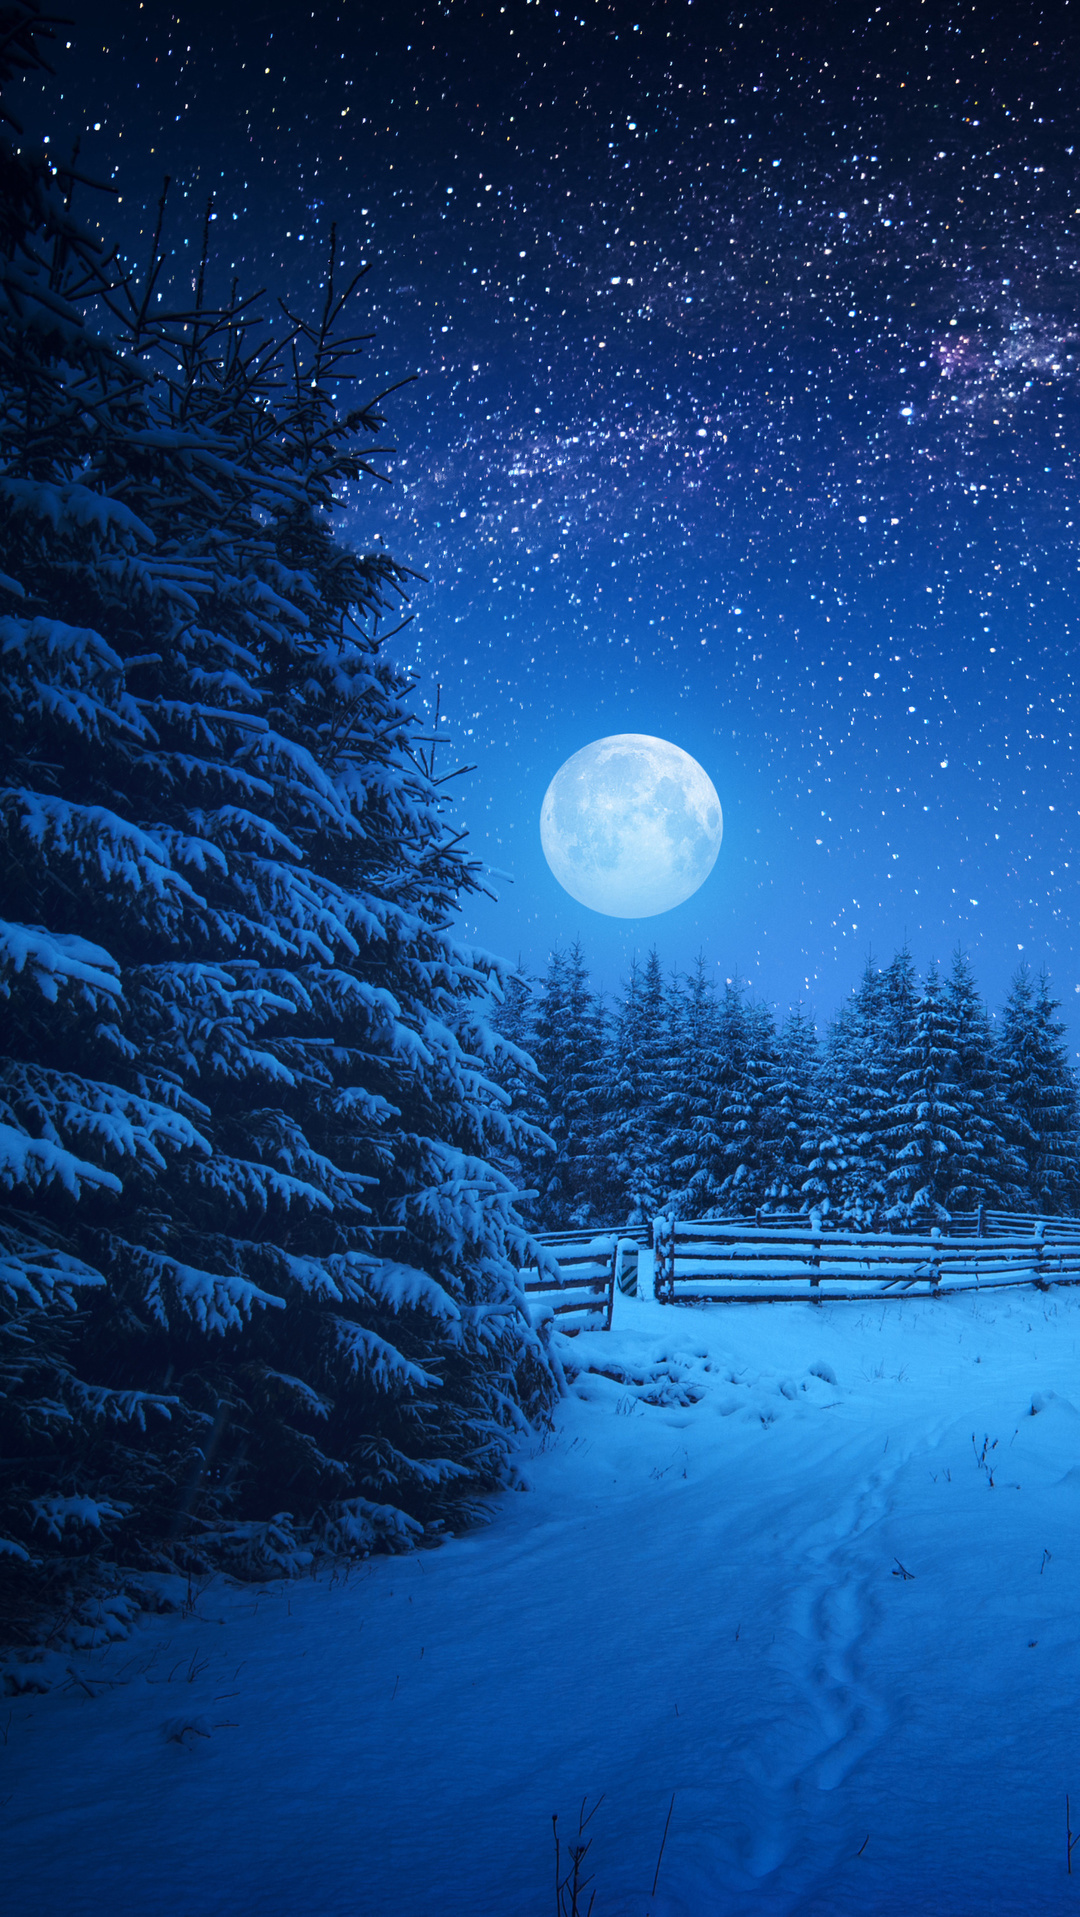 Full Moon Night In Winter Season Wallpaper Share